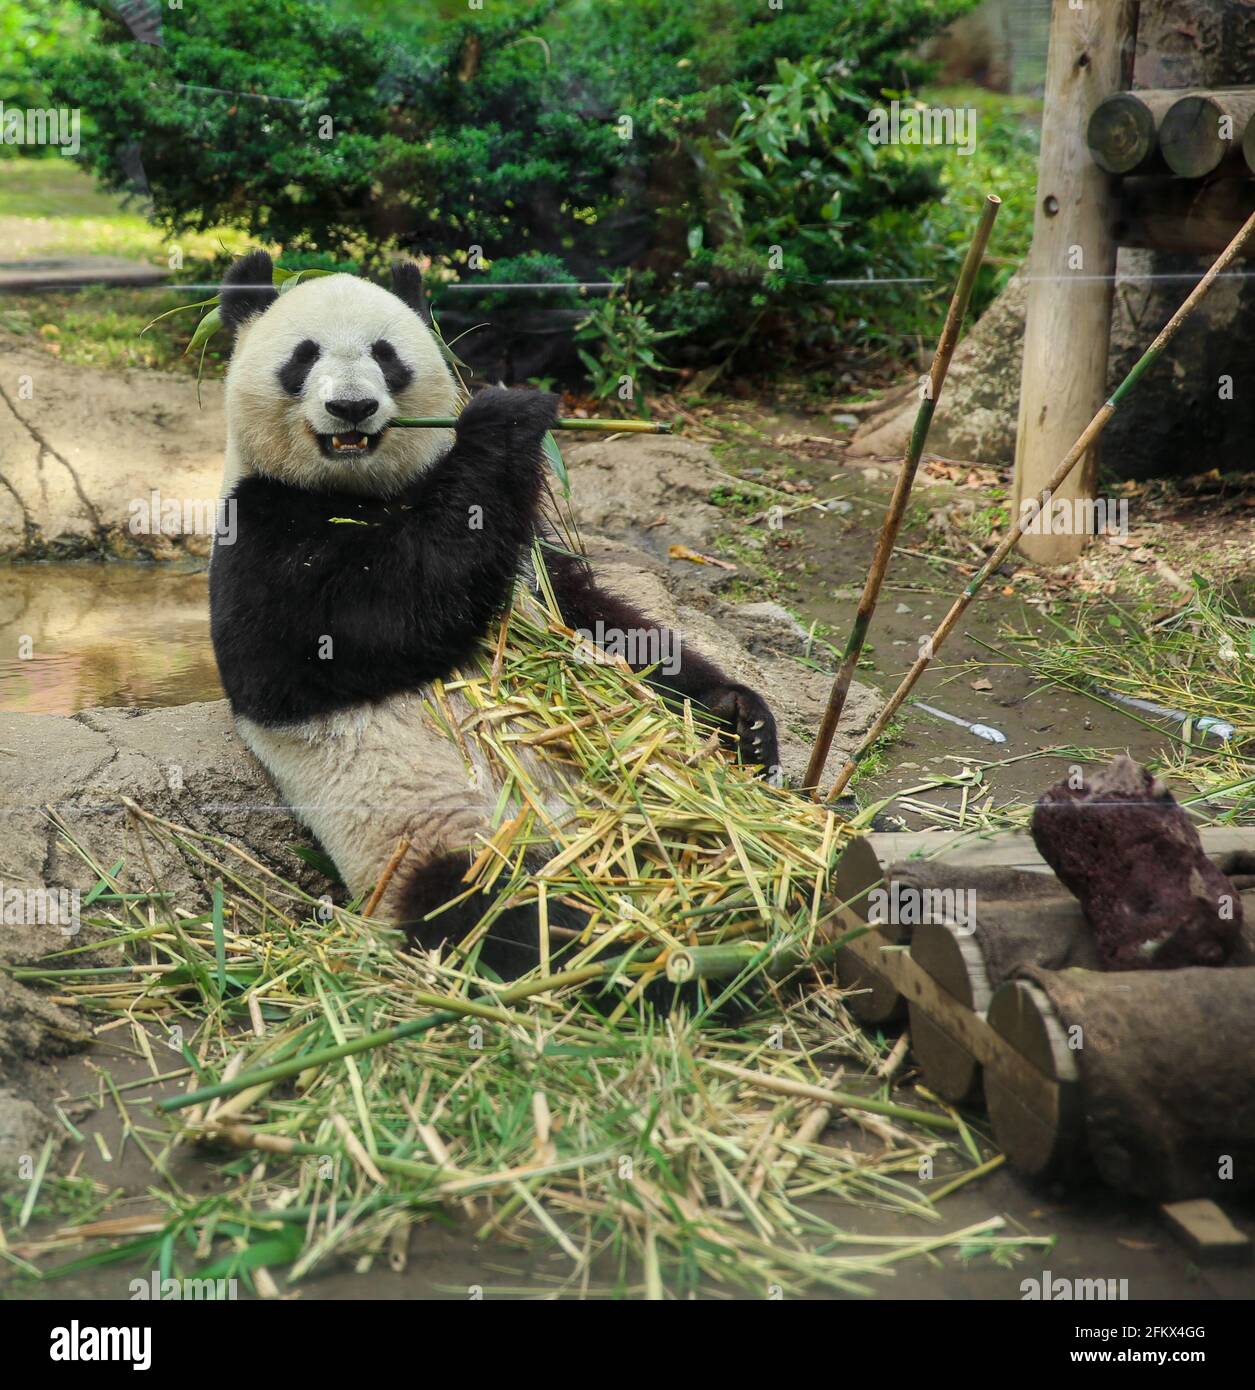 Xin Xin the Chinese Giant Panda Bear at the Japan Ueno Park Zoo, eating bamboo. Stock Photo